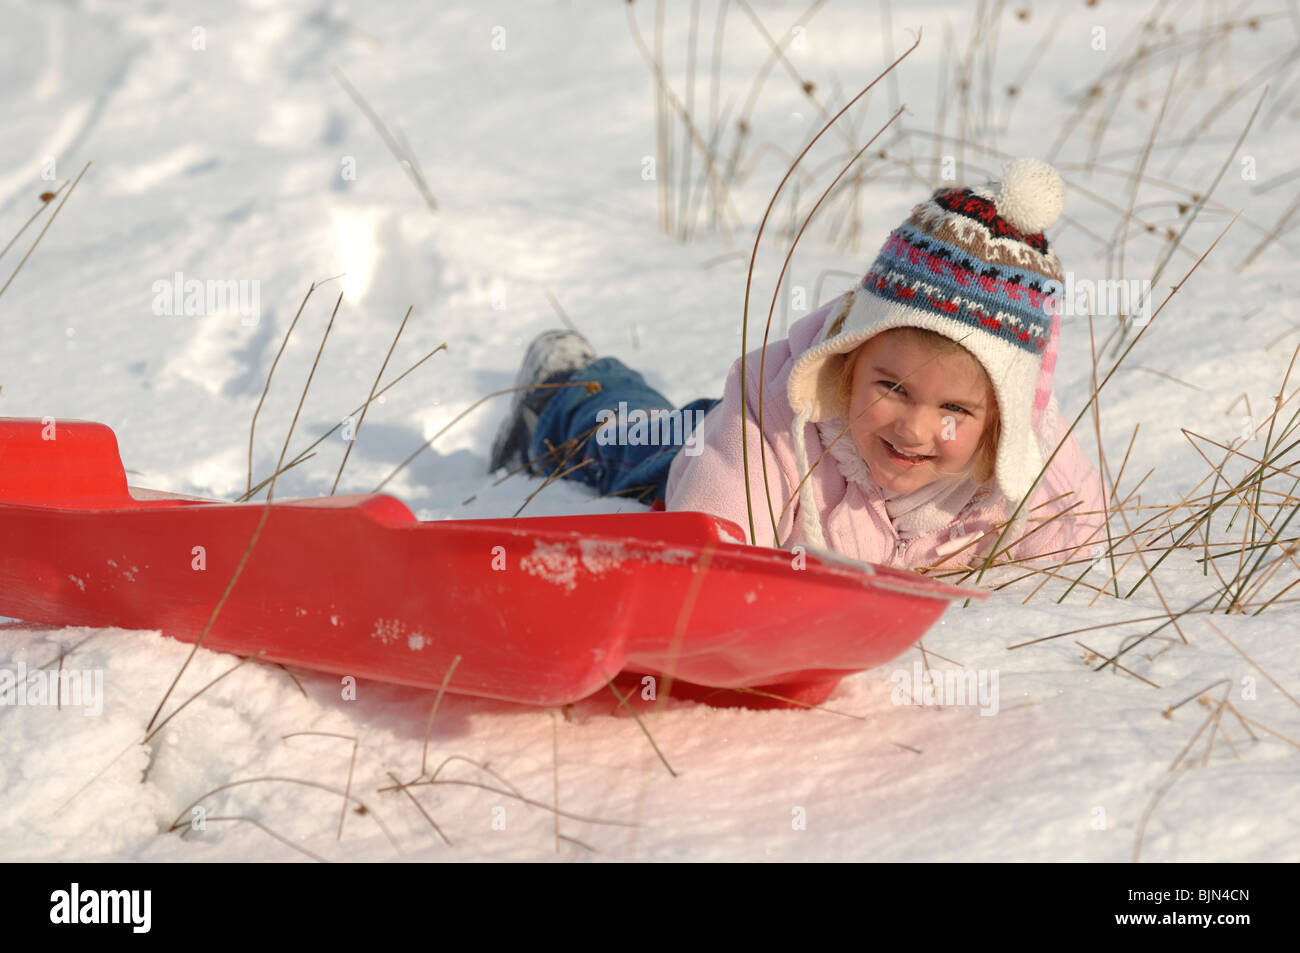 Une jeune fille de maternelle dans un manteau rose bonnet de laine et  s'amusant de la luge dans la neige sur un toboggan rouge Photo Stock - Alamy